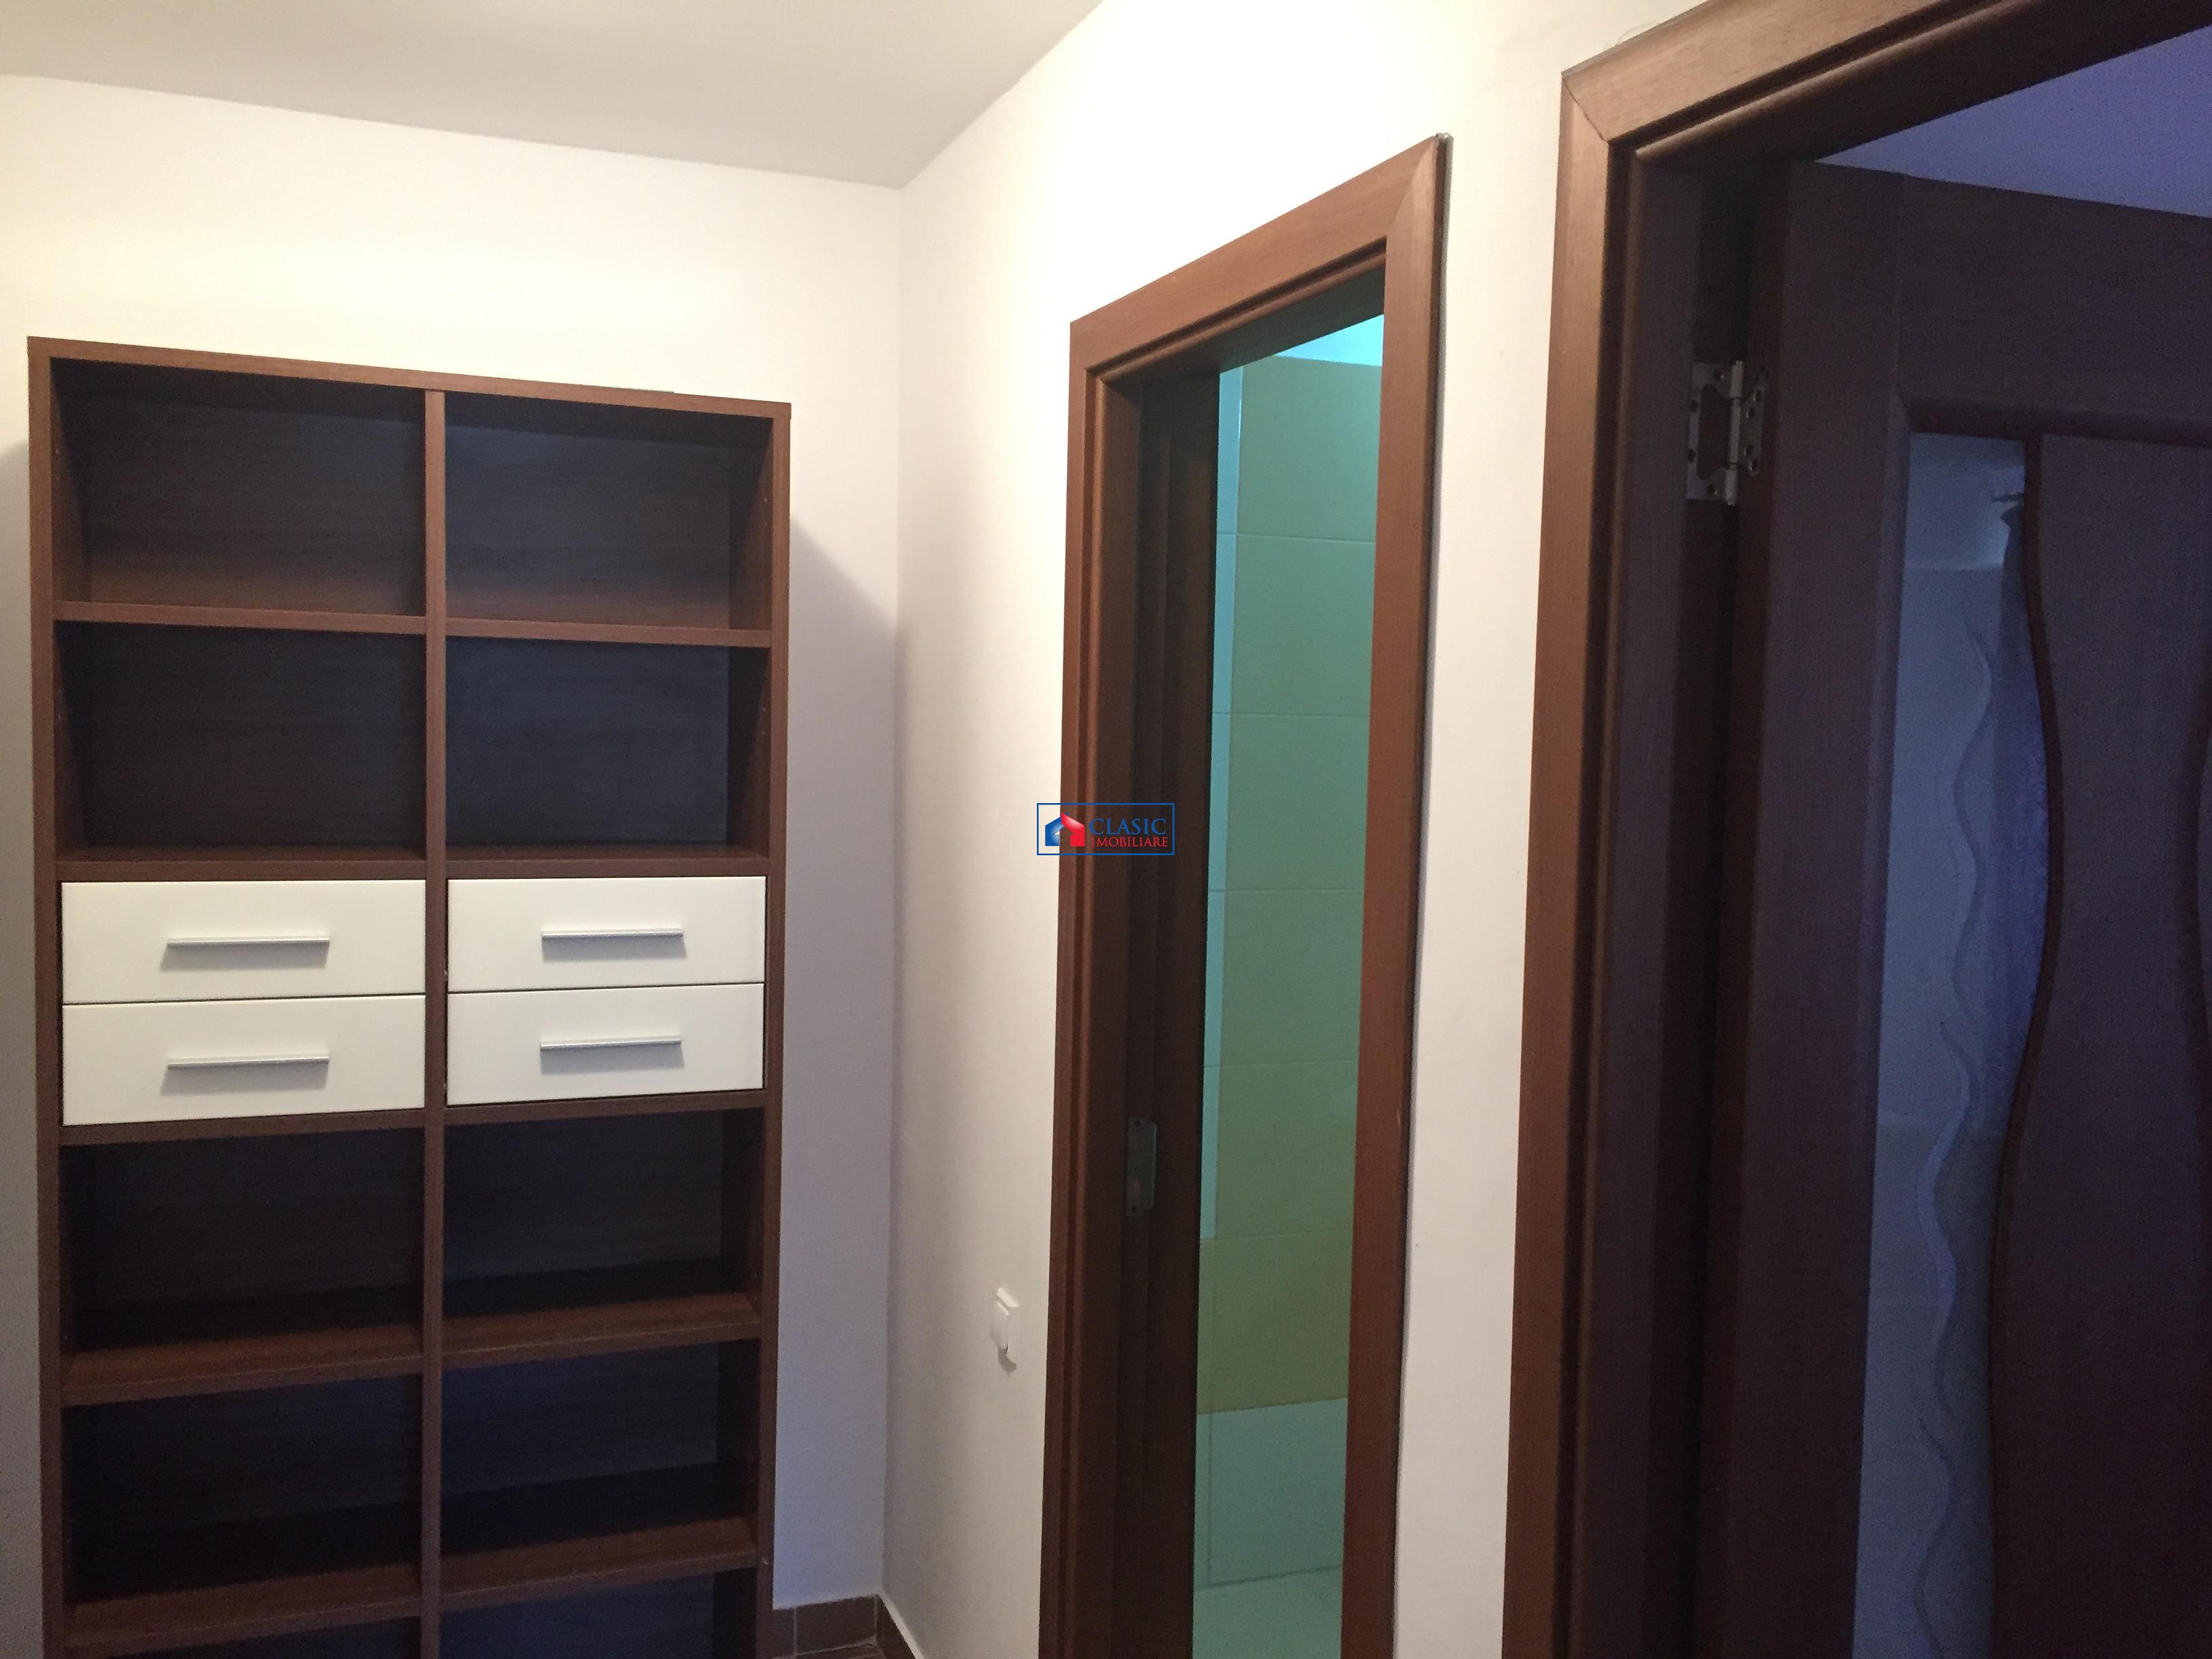 Inchiriere apartament 4 camere bloc nou modern in Zorilor  zona UMF, Cluj Napoca